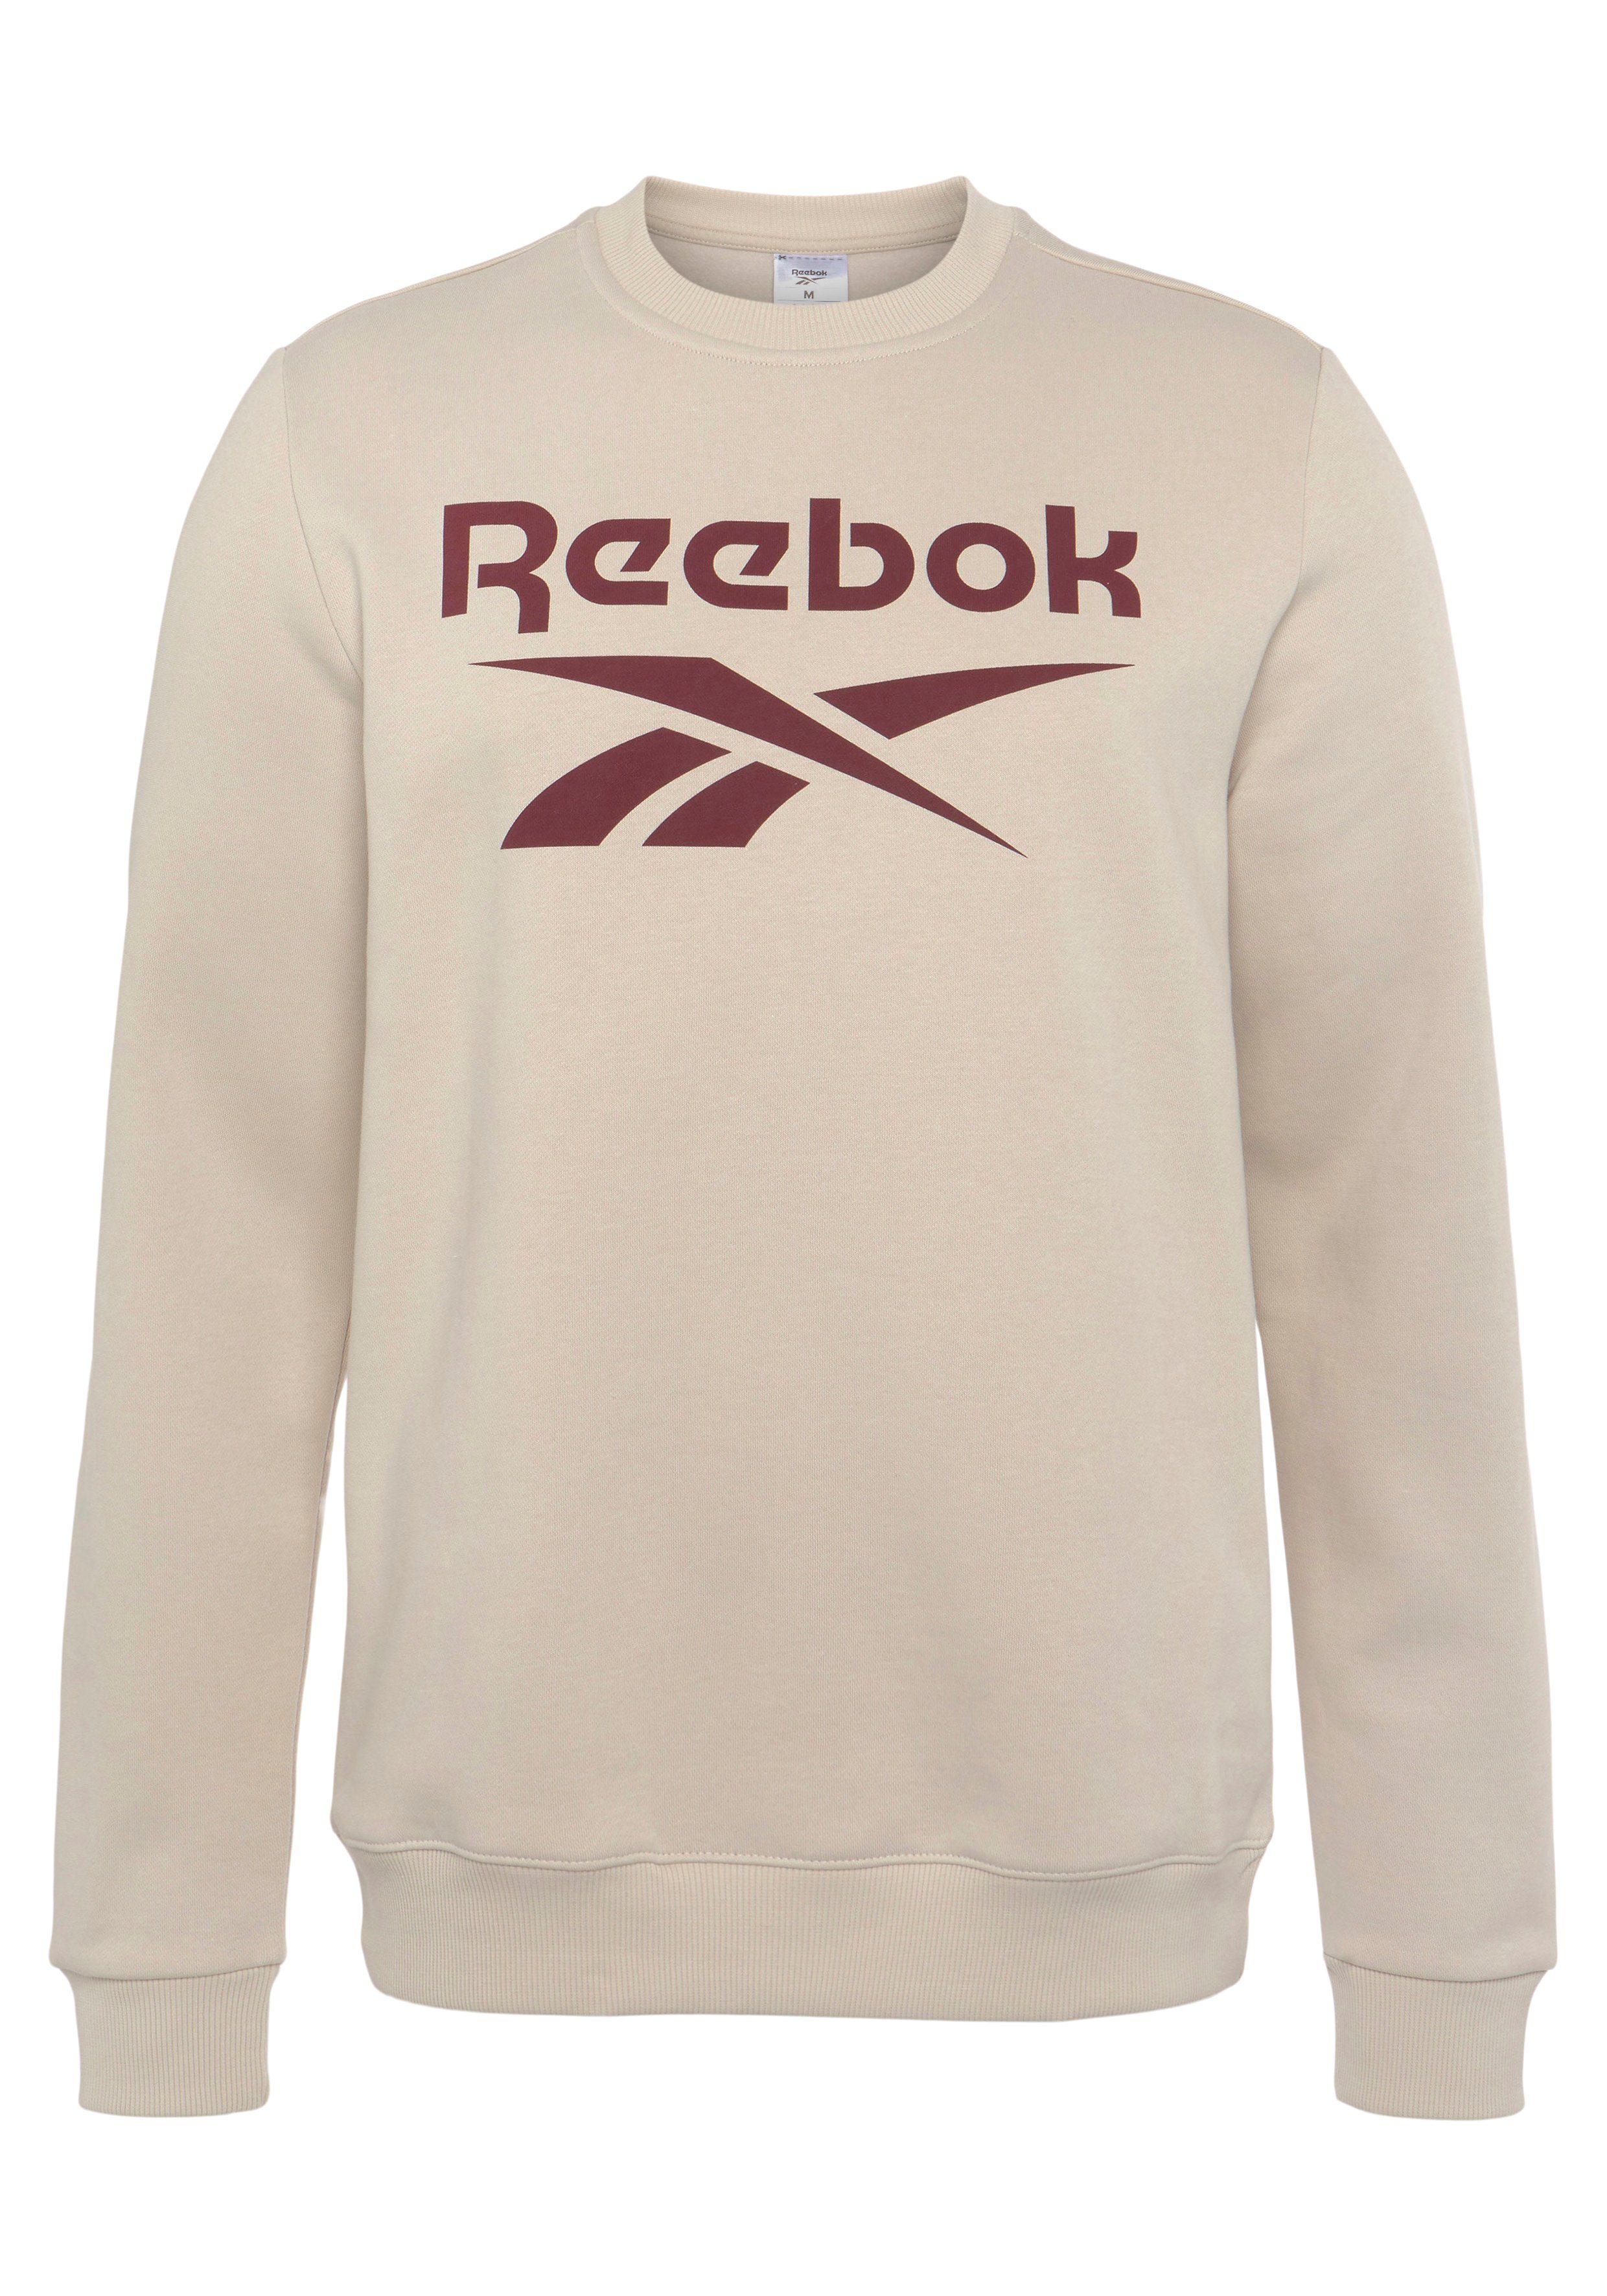 Sweatshirt Reebok REEBOK CREW FLEECE LOGO stucco SWEATSHIRT STACKED IDENTITY